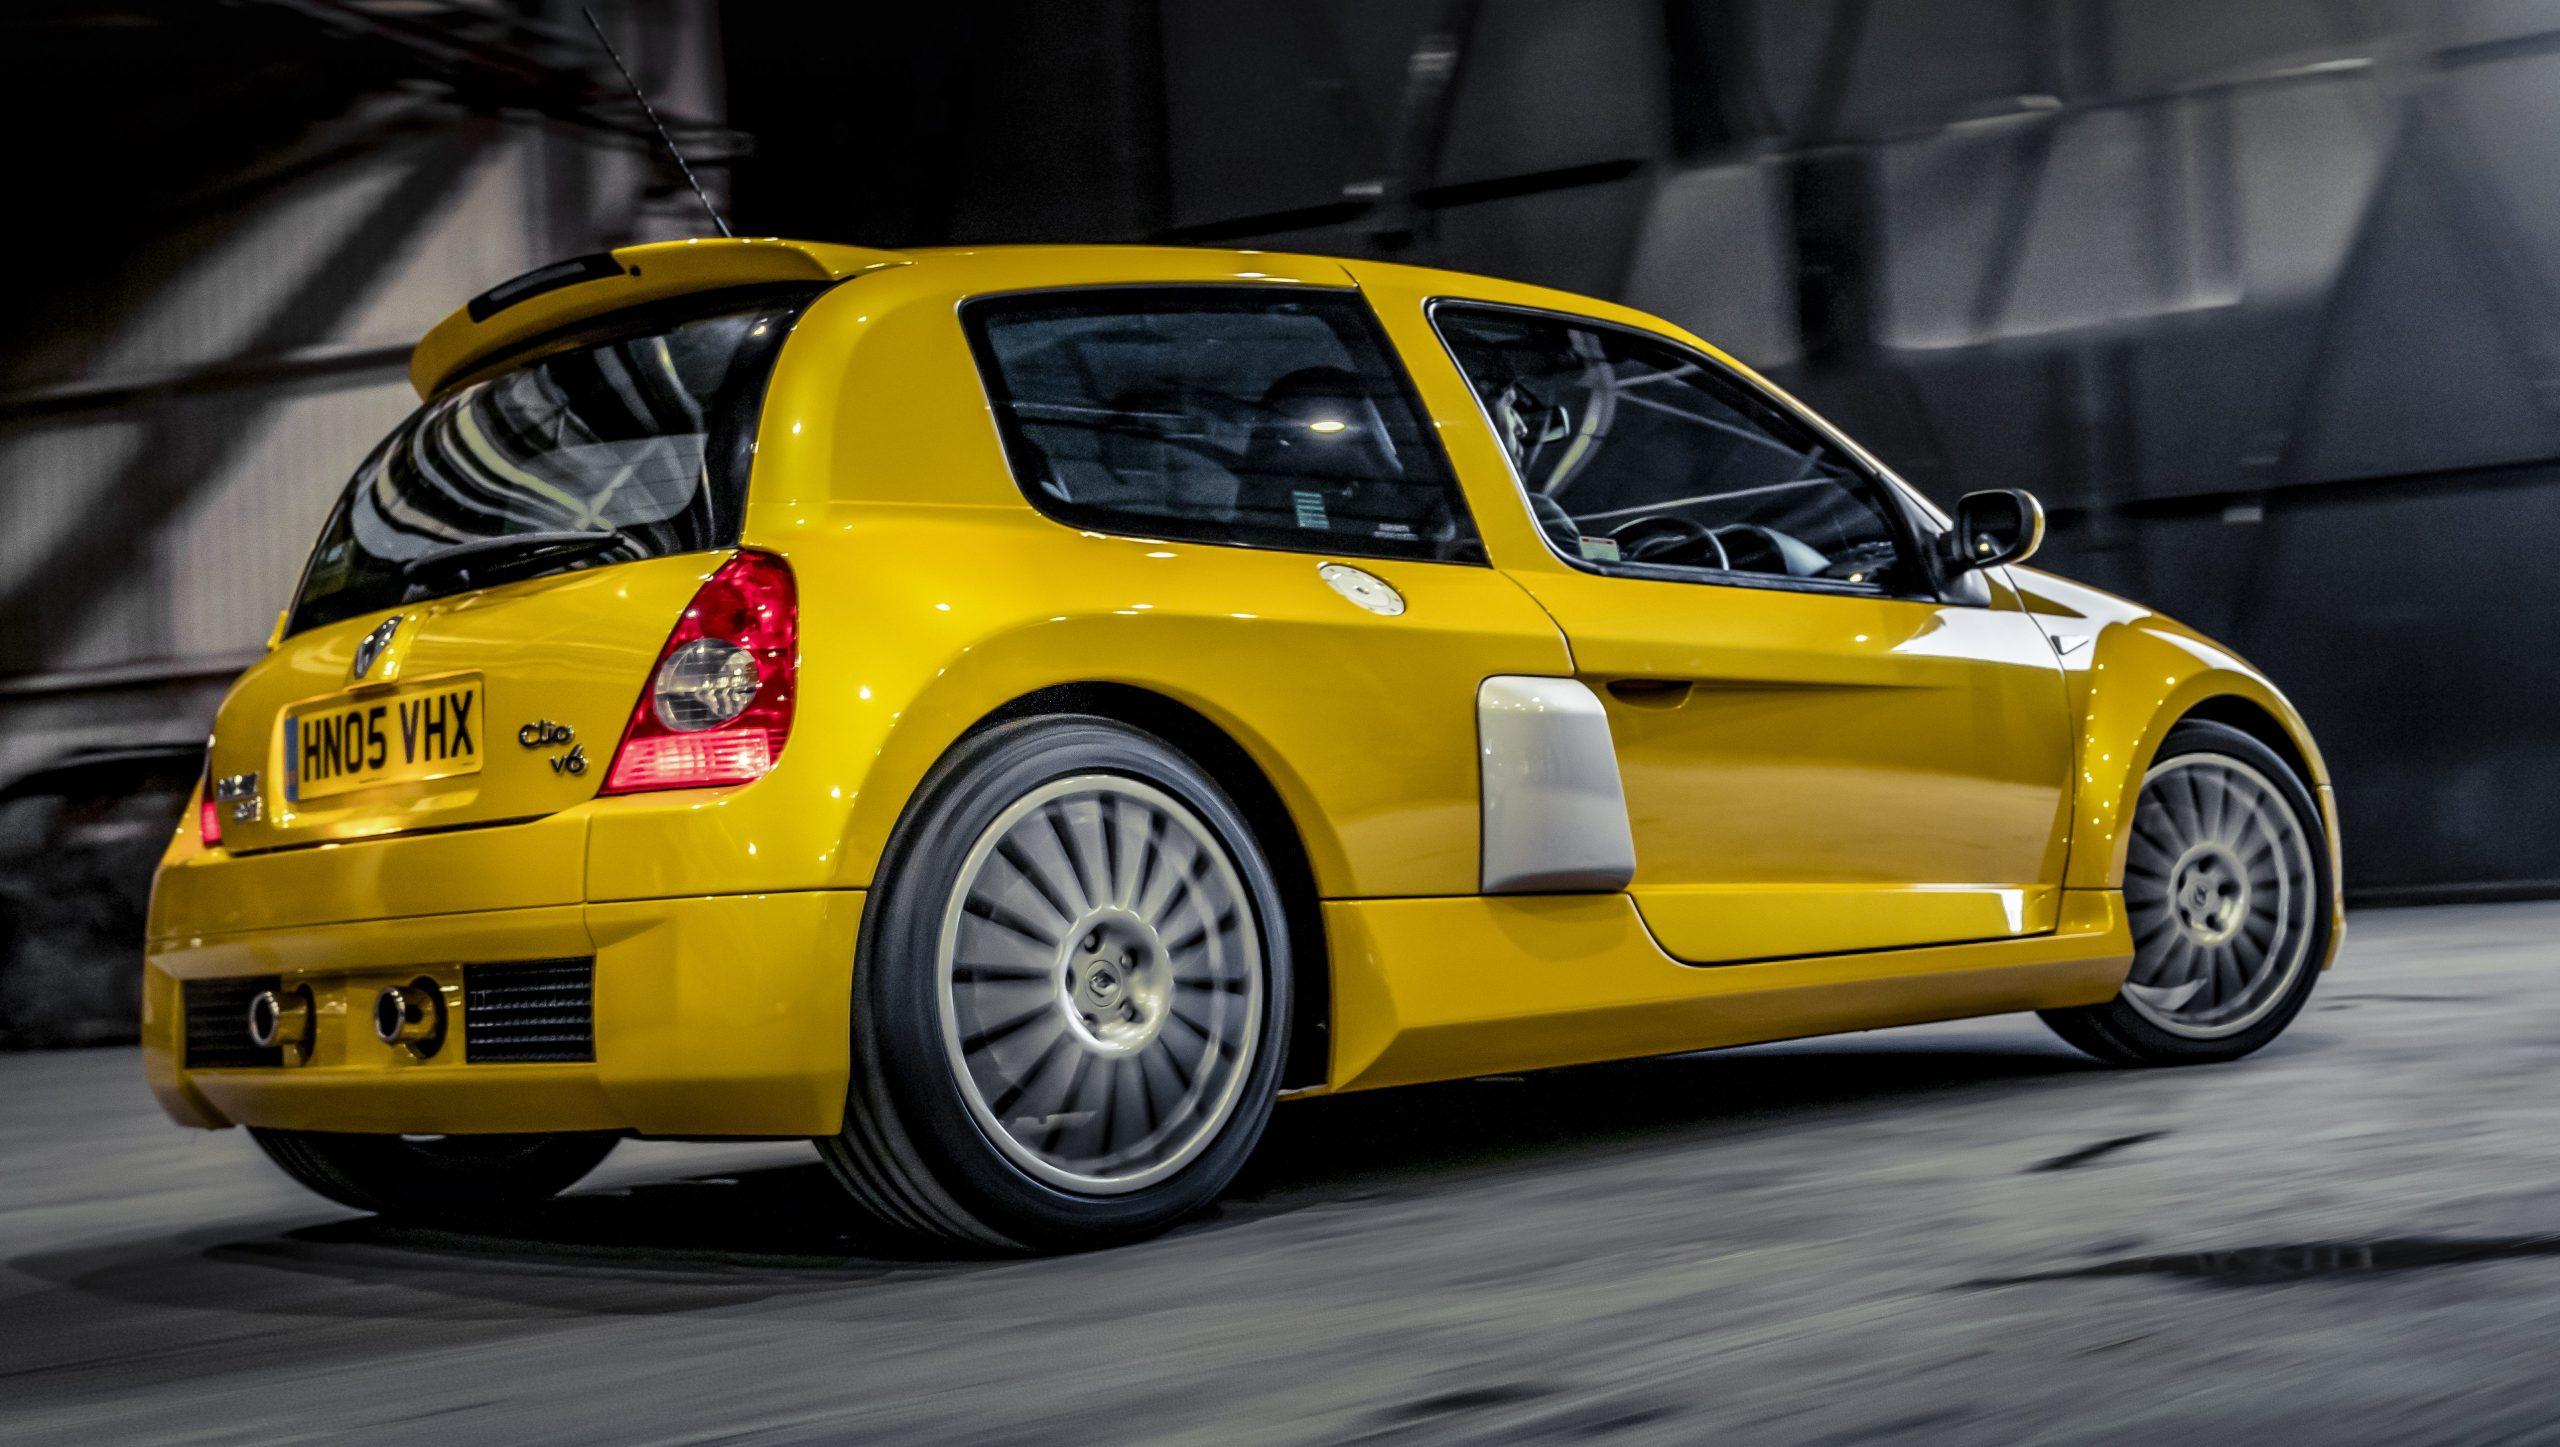 Reusachtig teer twee weken Tweedehands Renault Clio V6? Let op deze punten - TopGear Nederland